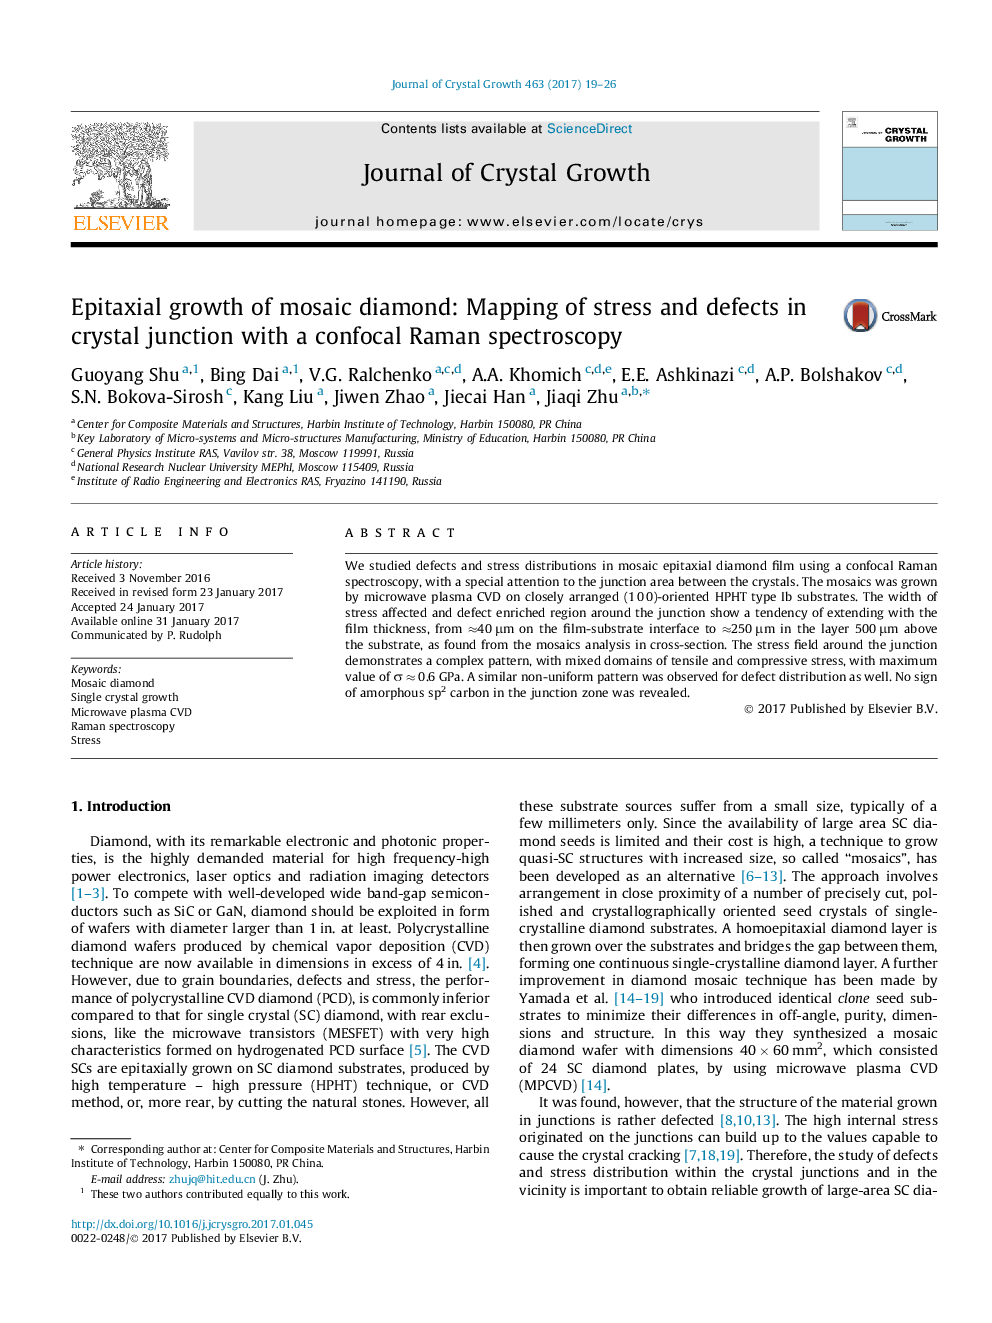 رشد اپتیکسال الماس موزائیک: نقشه برداری از تنش و نقص در اتصال کریستال با طیف سنجی رامان کانکوکال 